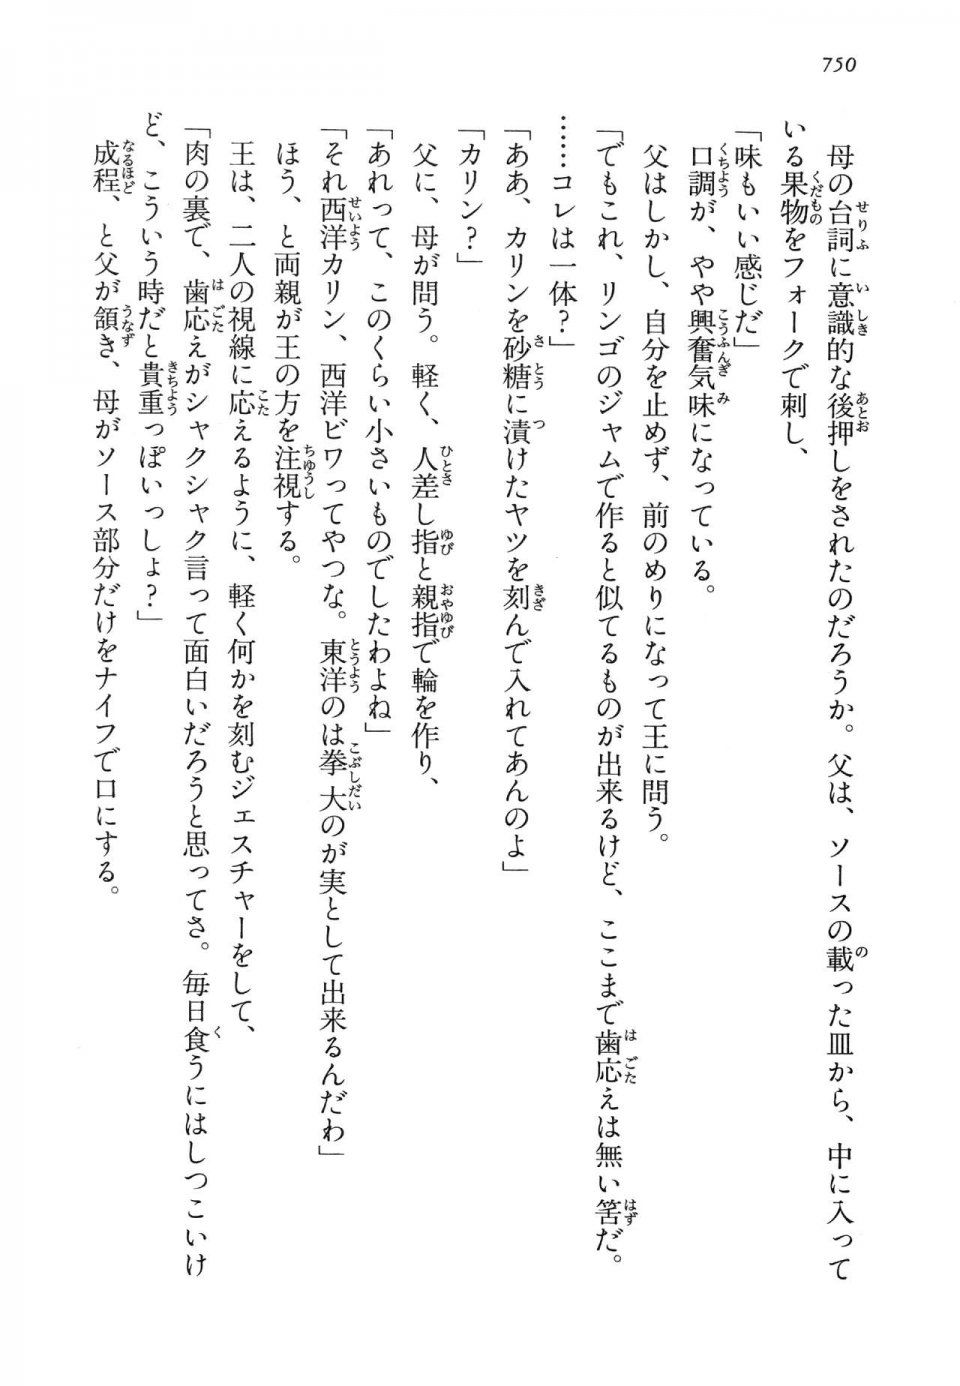 Kyoukai Senjou no Horizon LN Vol 14(6B) - Photo #750